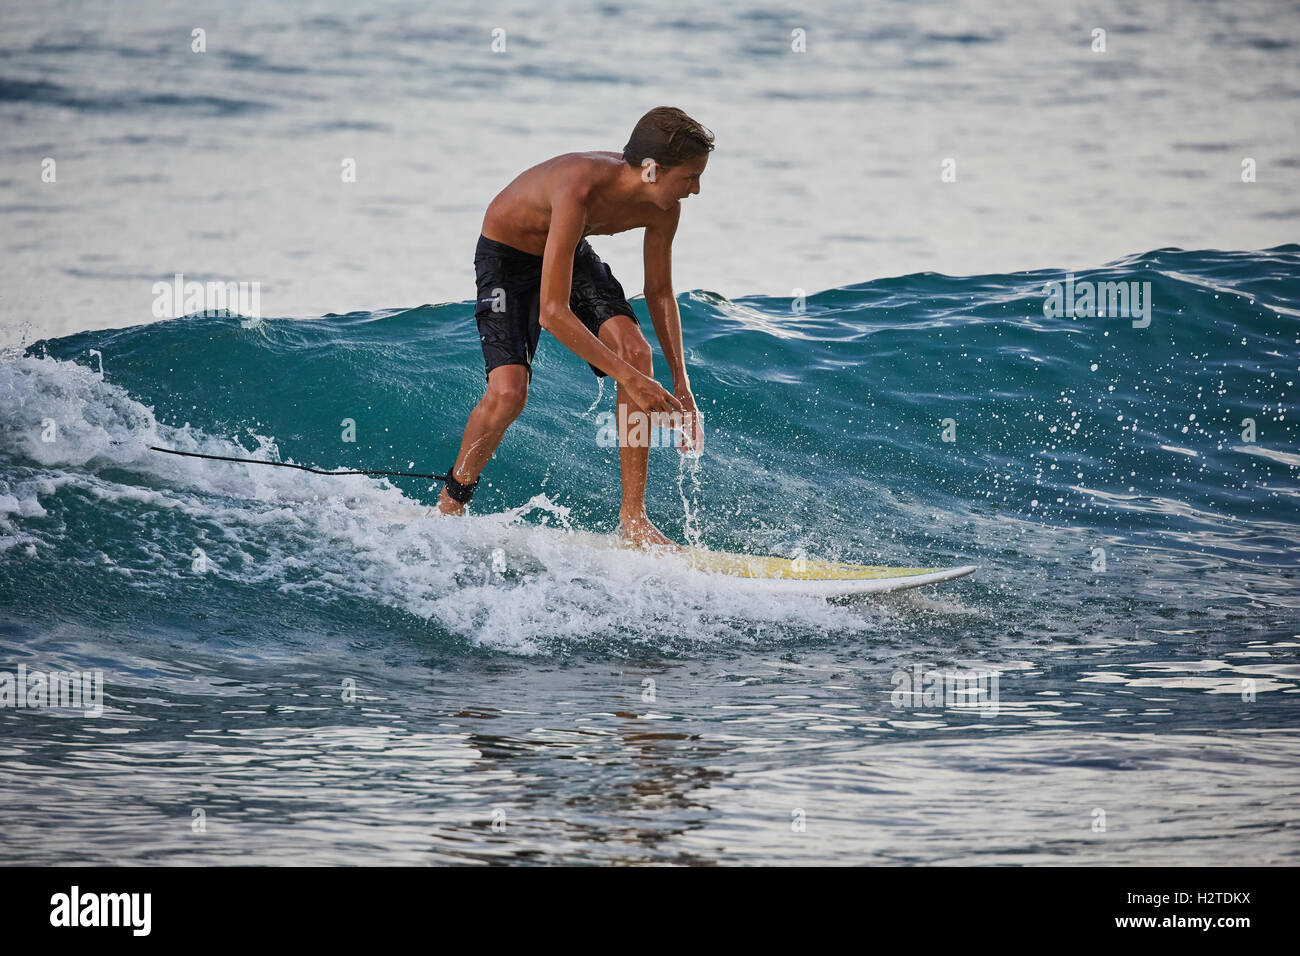 La Barbade Bridgetown surfers joli jeune garçon homme adolescents surf surfers copyspace surfboards dans vie mer vapeur froide Banque D'Images